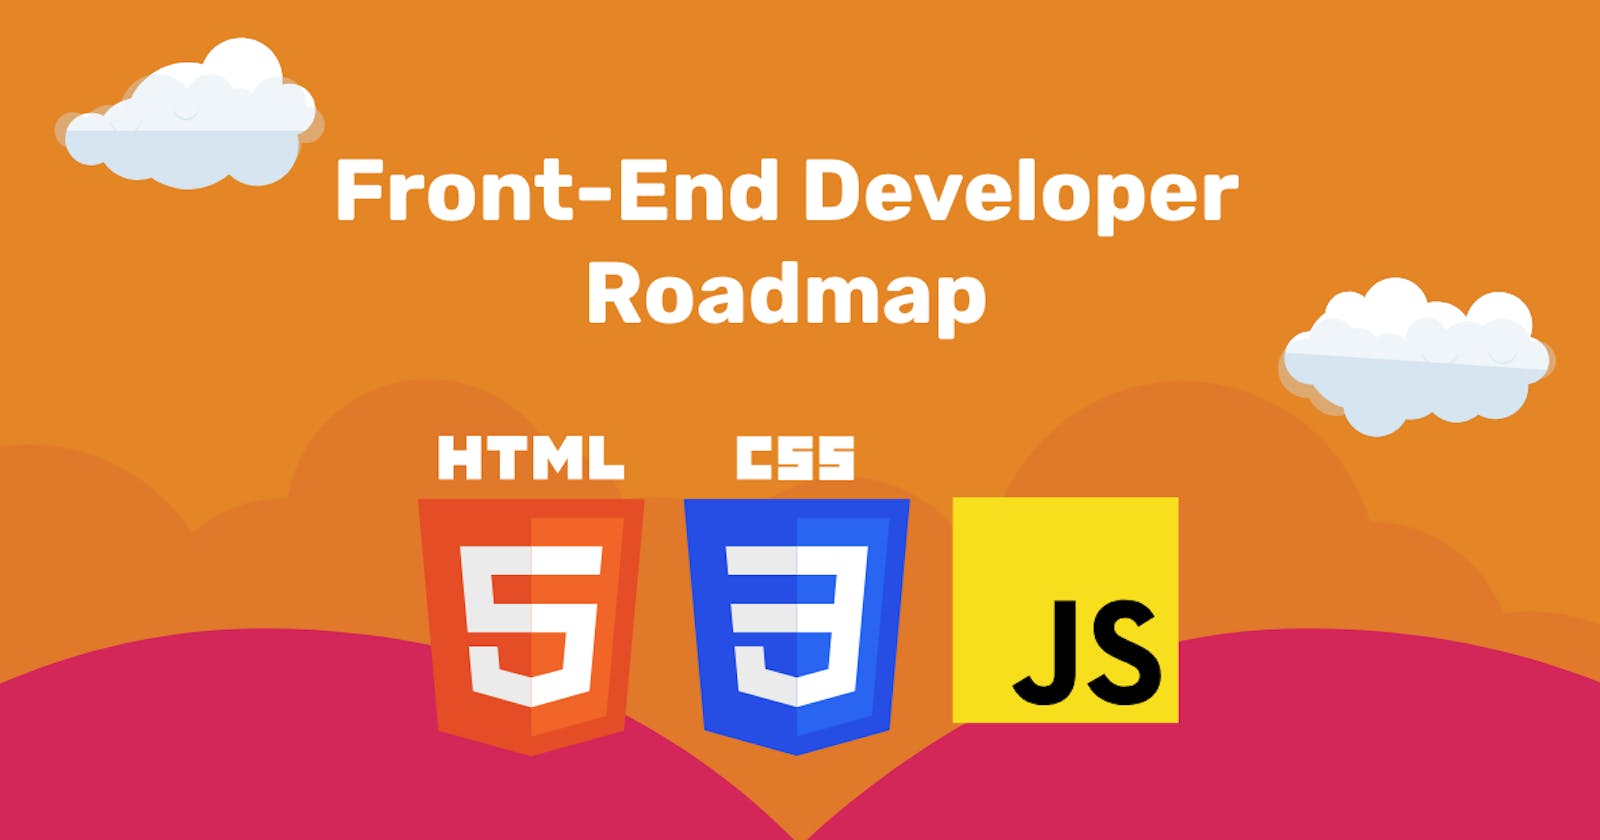 Front-End Developer Roadmap (Simplified)